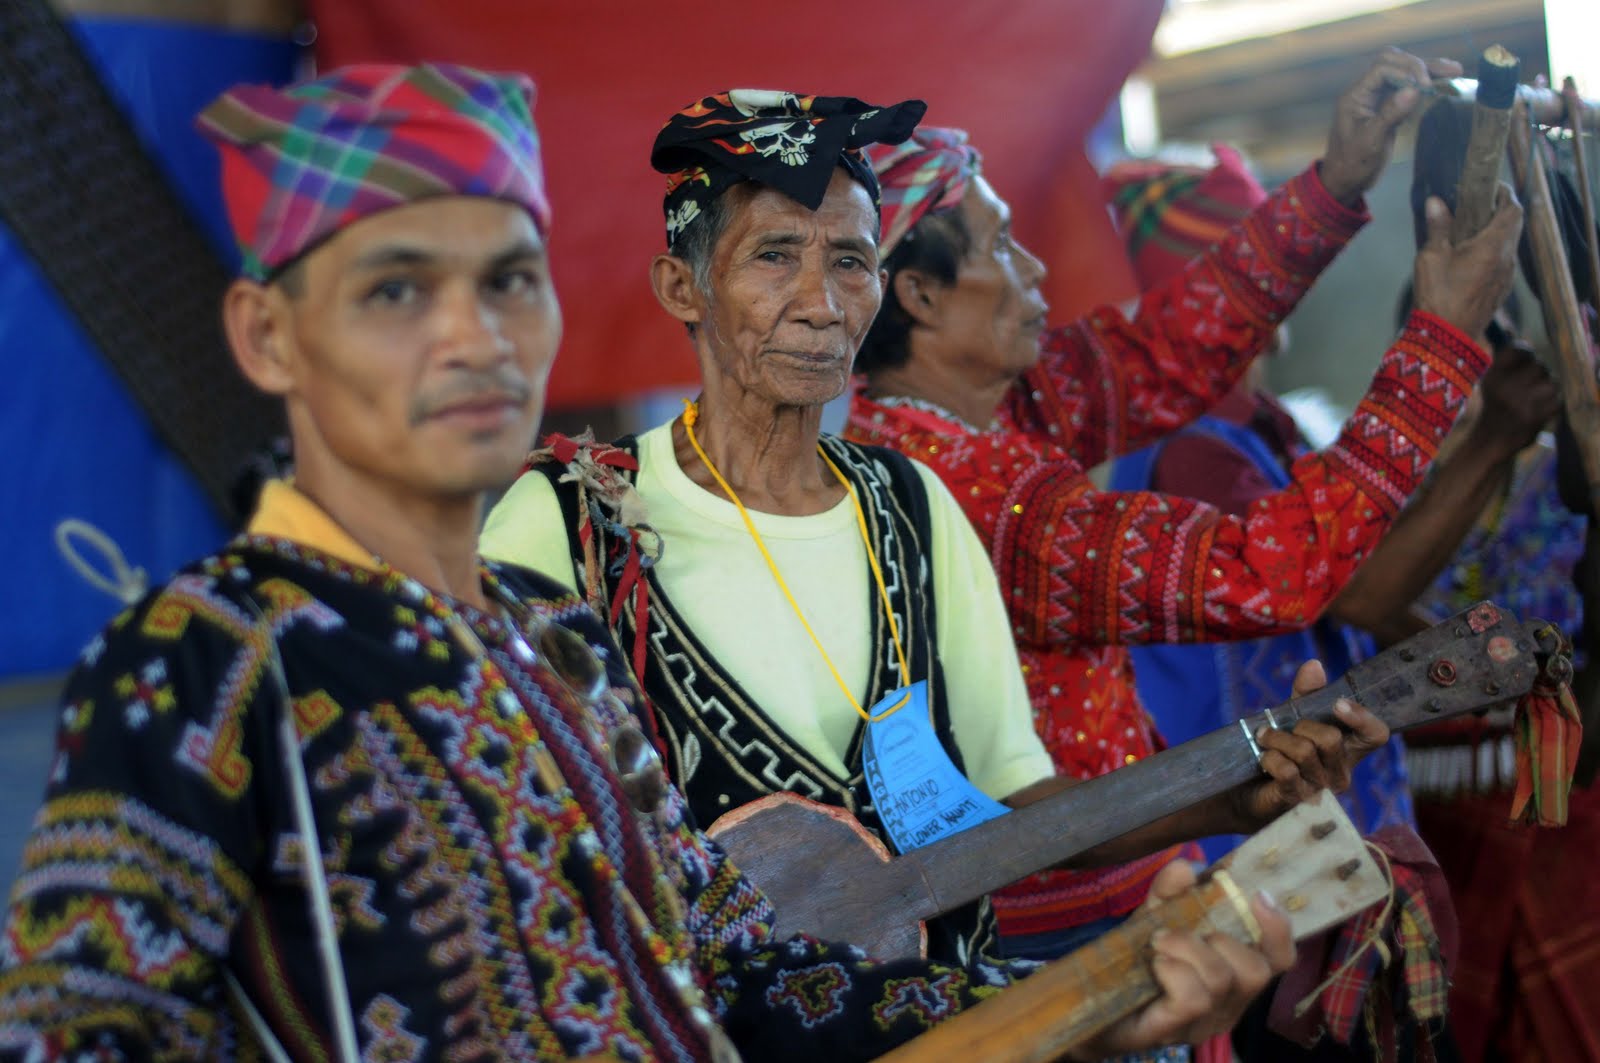 PHILIPPINEN REISEN - STÄMME - MINDANAO - Beschreibung des Stammes der Tagakaolo